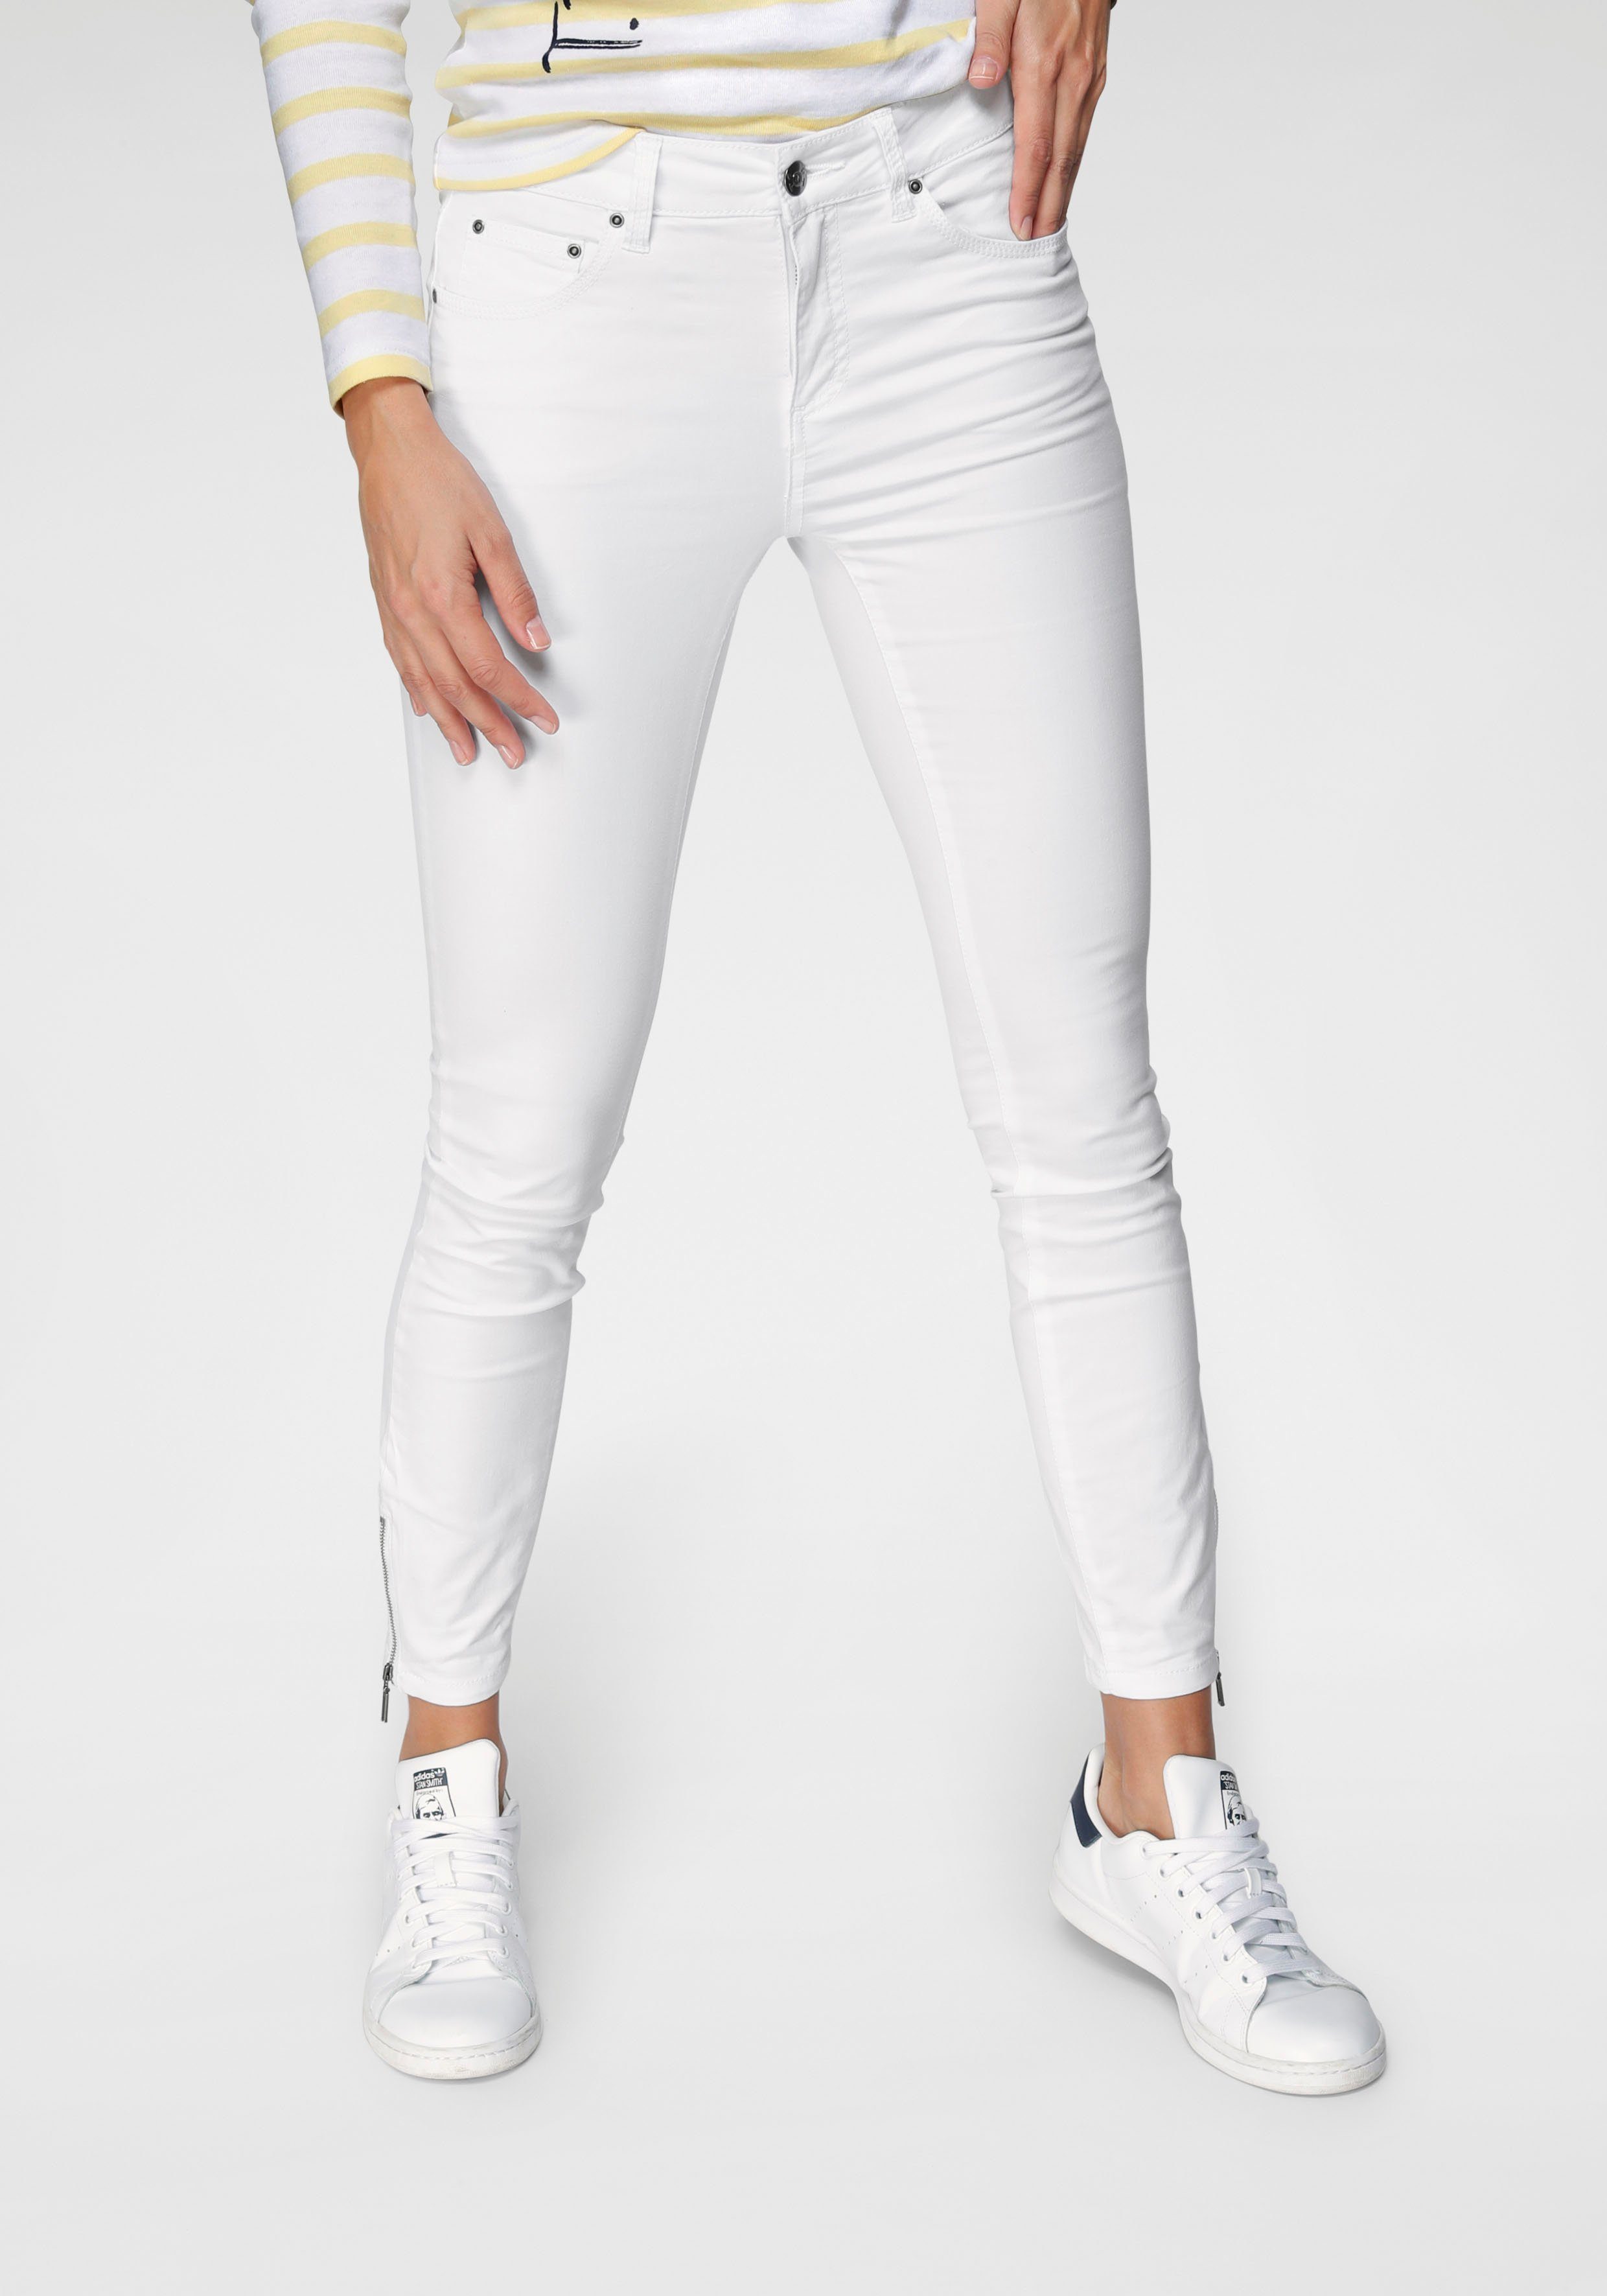 Weiße High Waist Jeans online kaufen | OTTO